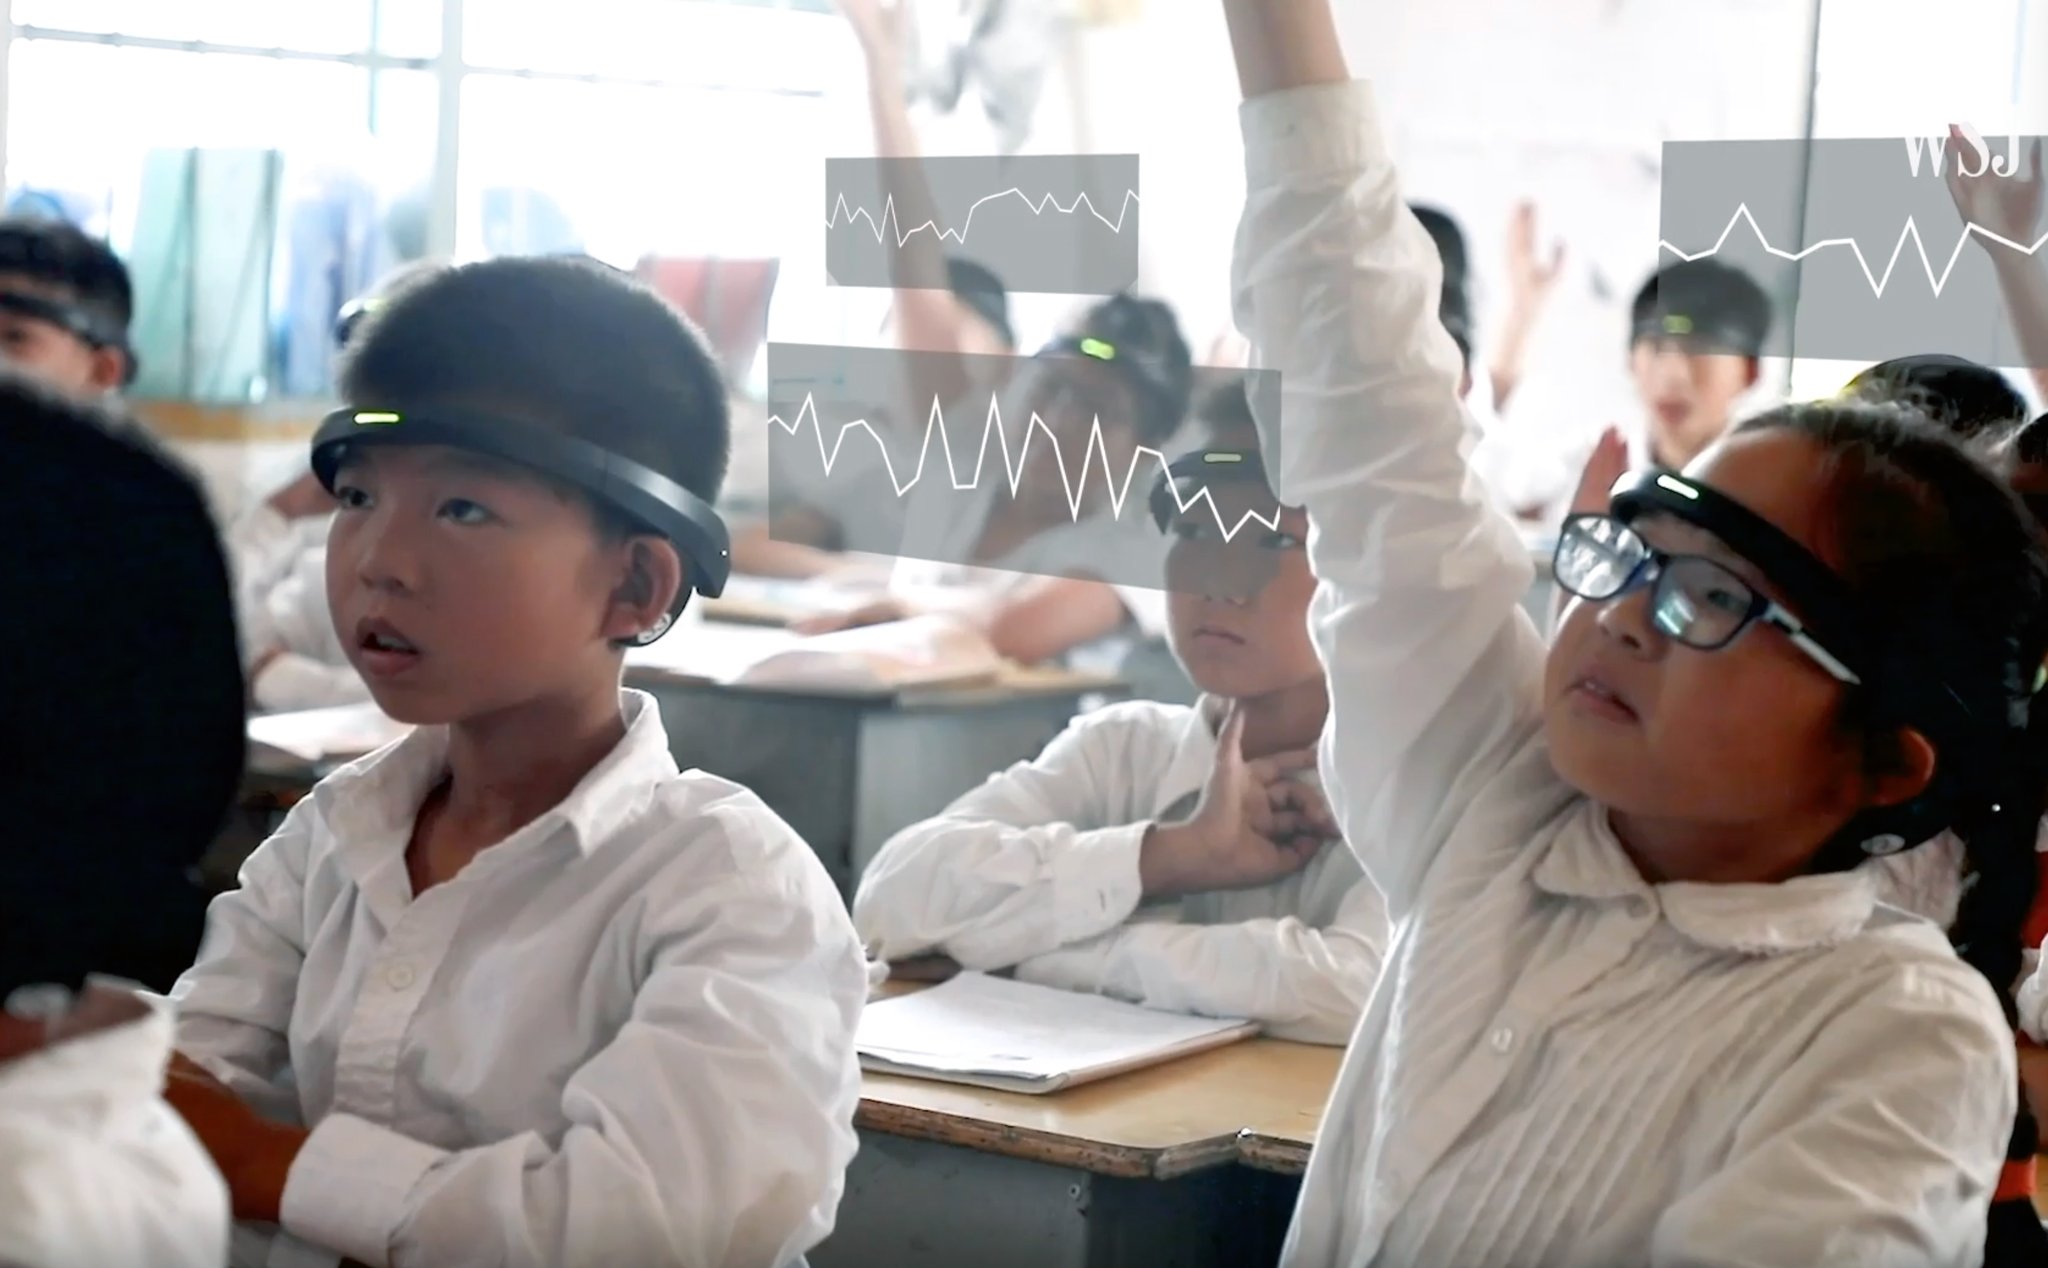 Trường học TQ bắt học sinh đeo vòng theo dõi, biết khi nào mất tập trung để báo thầy cô, cha mẹ